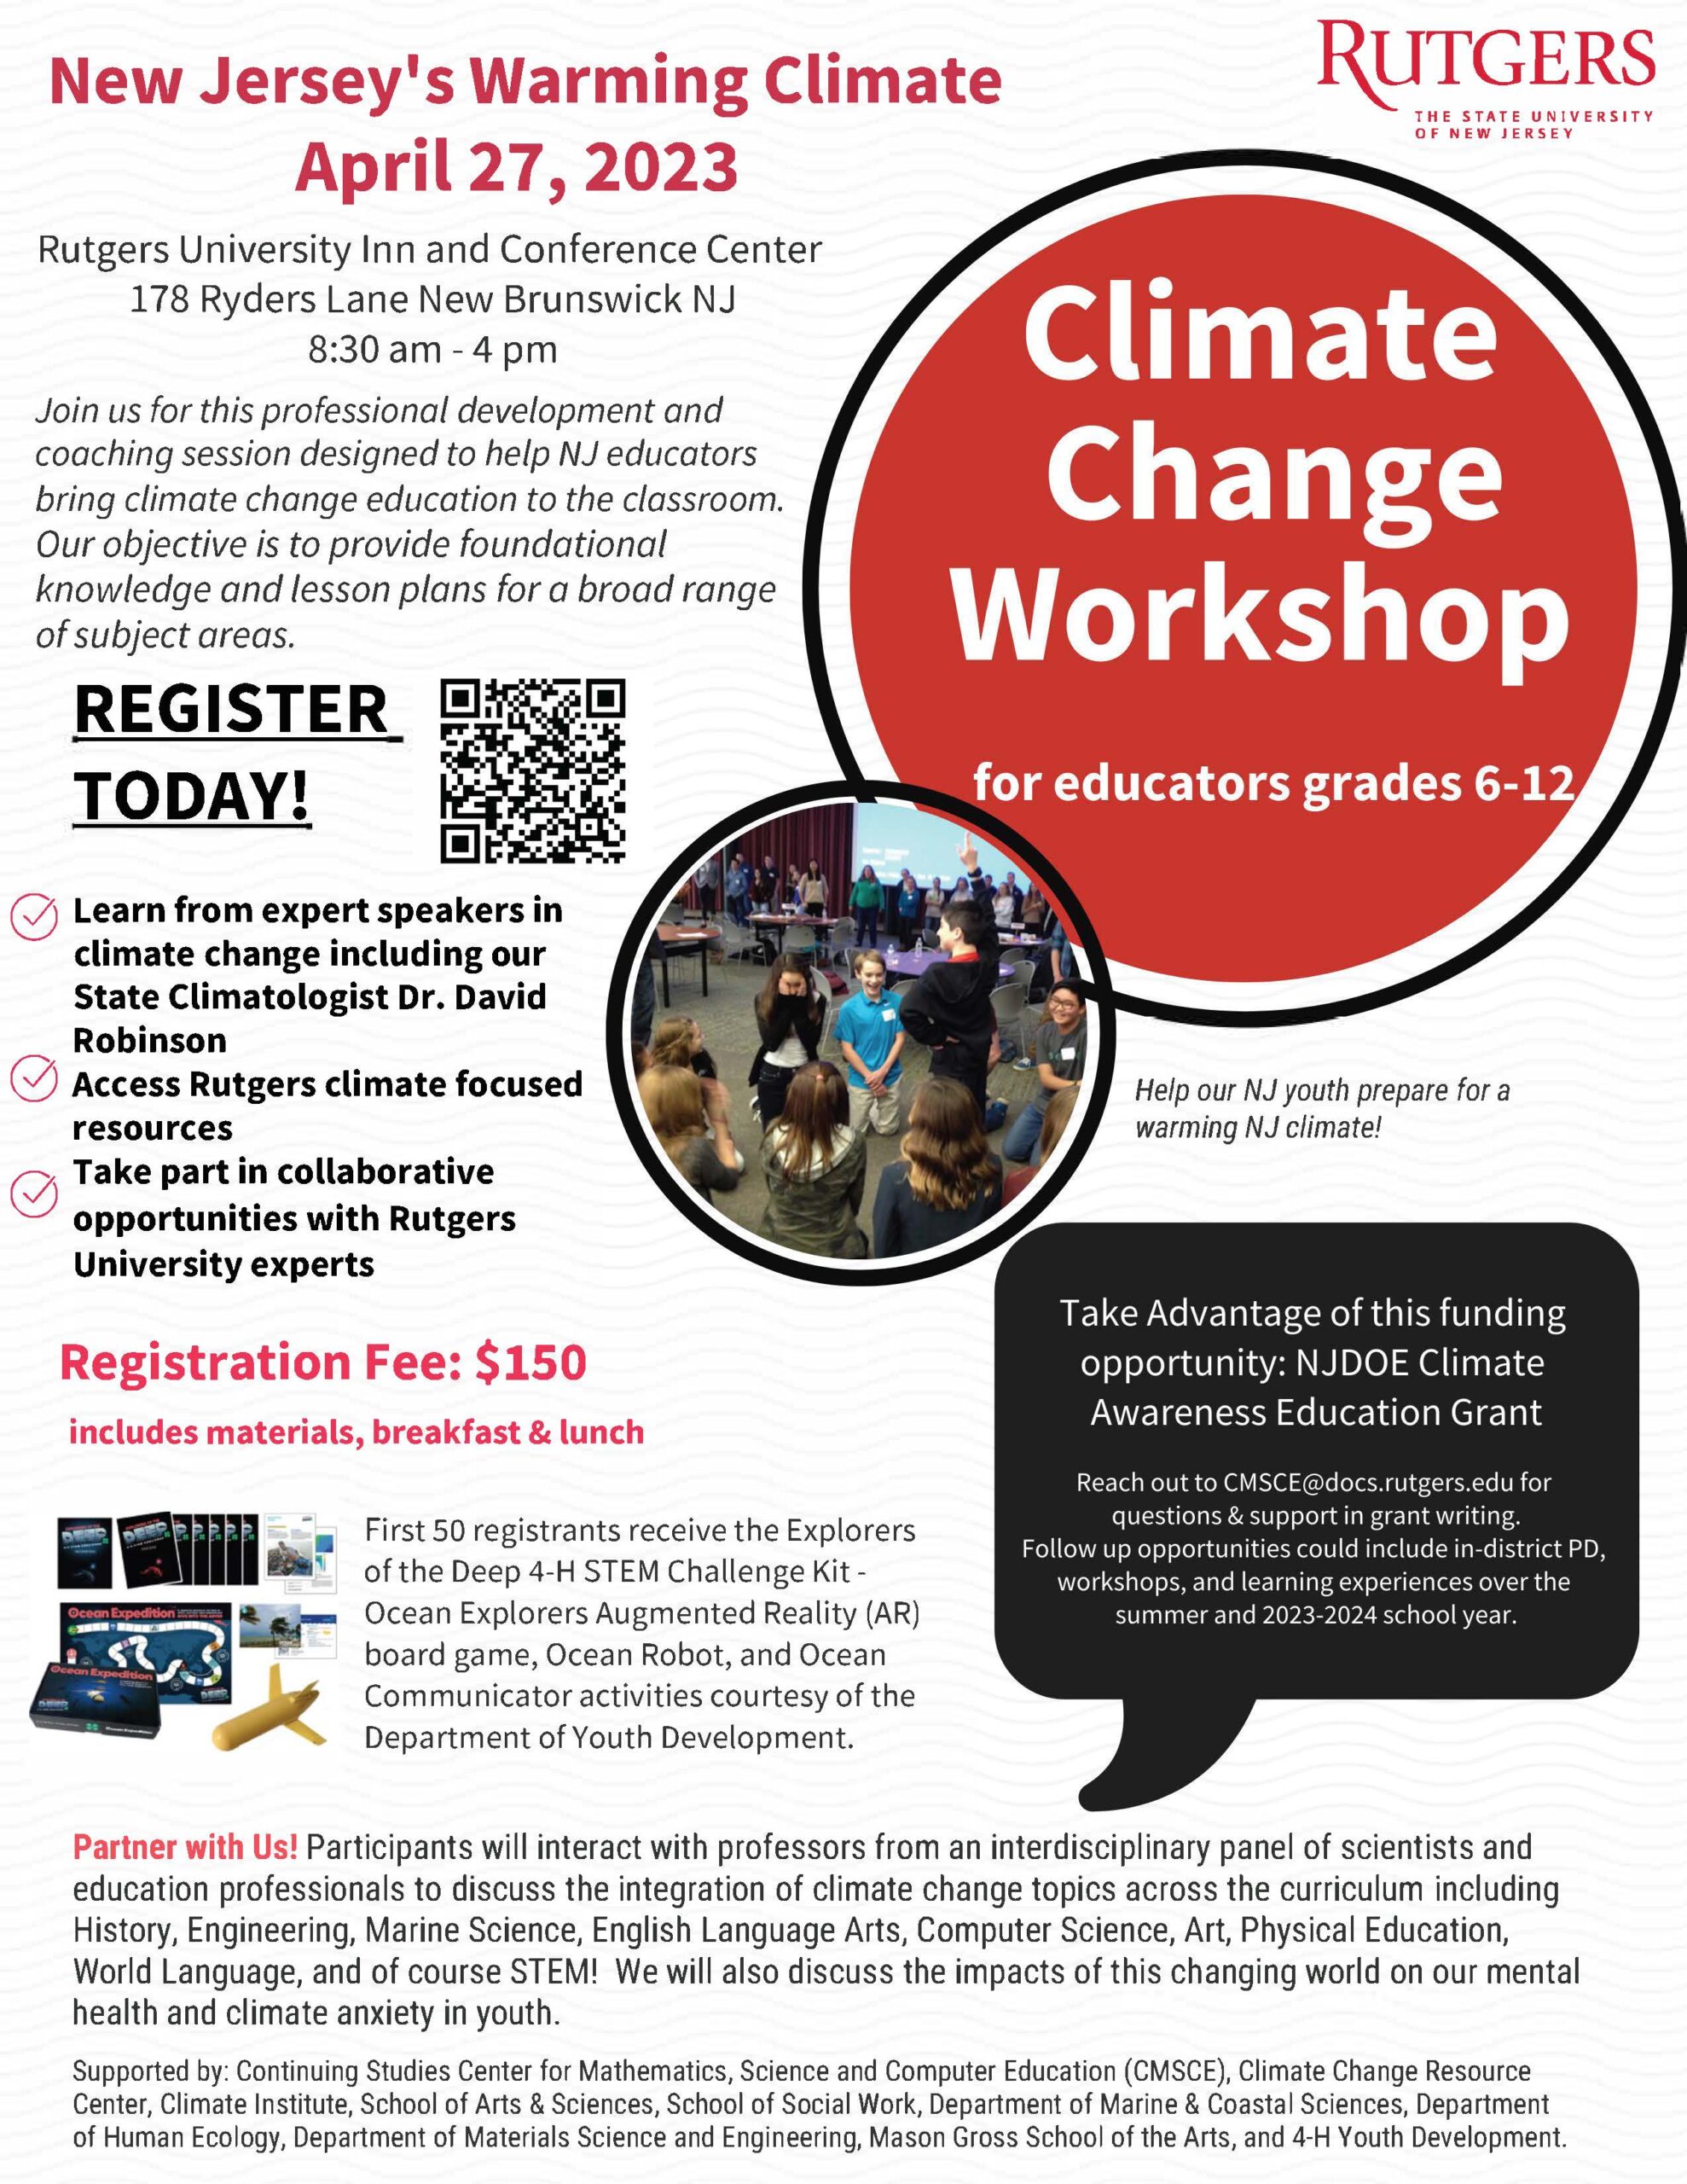 Climate Change Educators Workshop